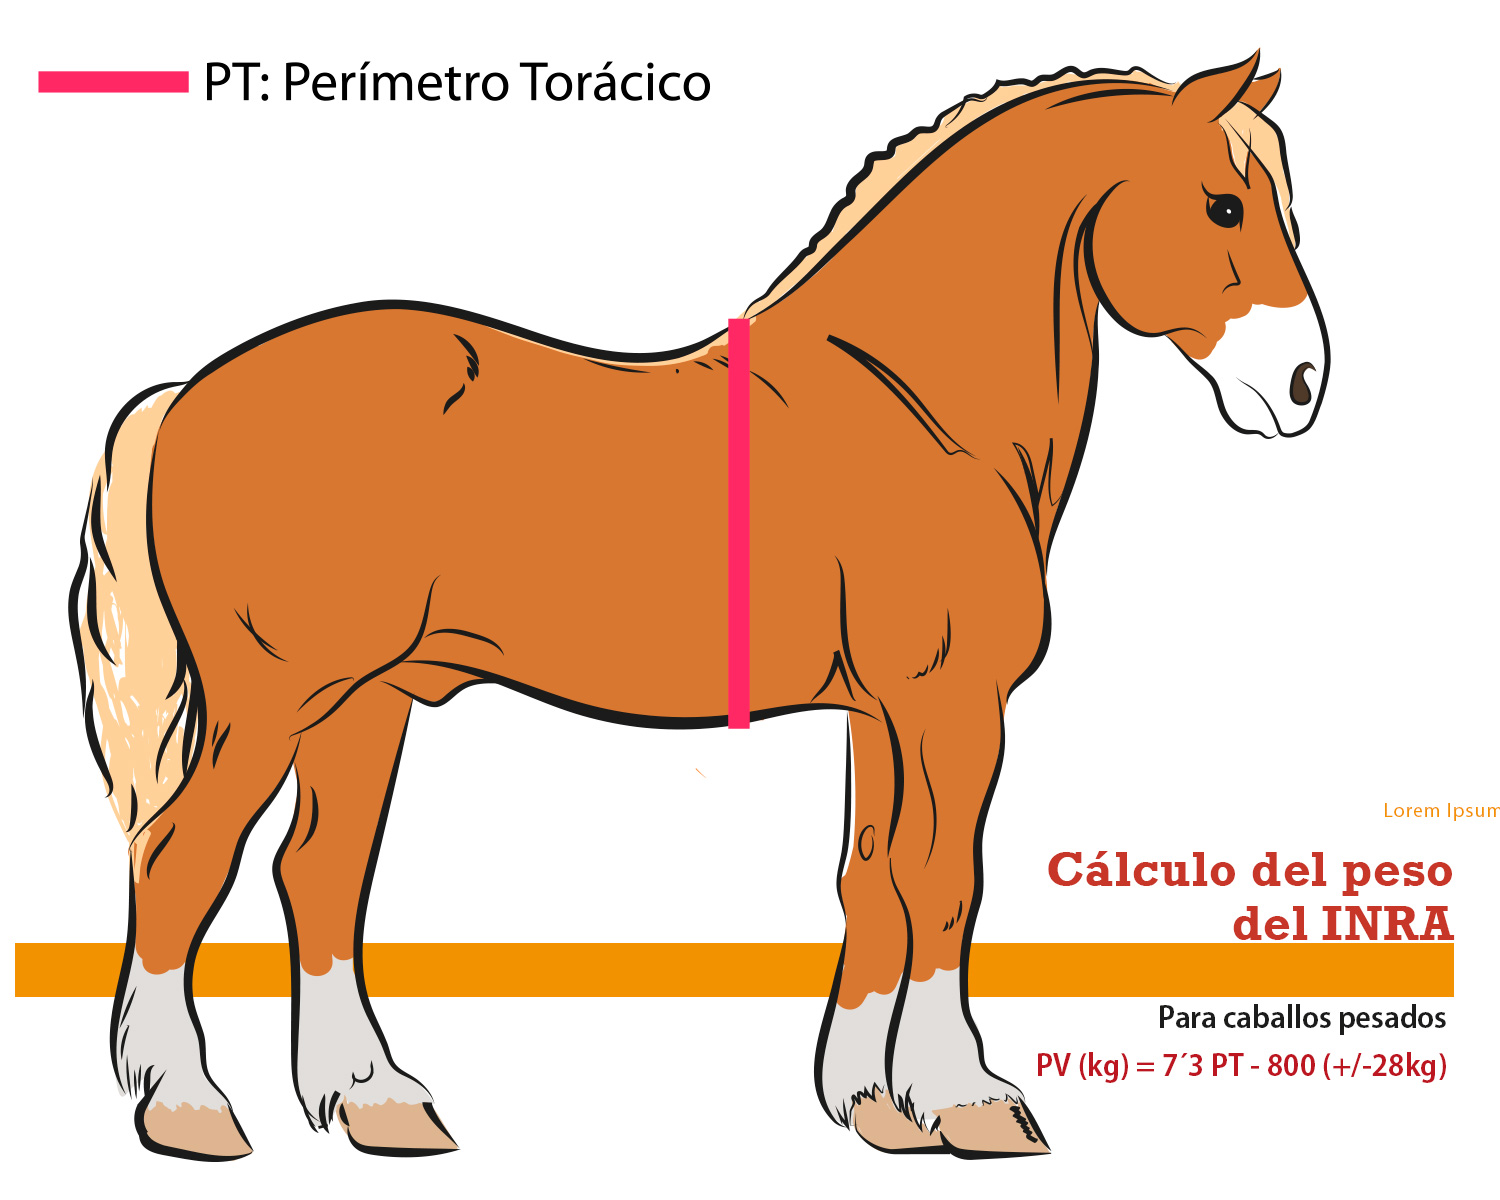 Imagen del cálculo del peso del caballo pesado(o de tiro) según el INRA